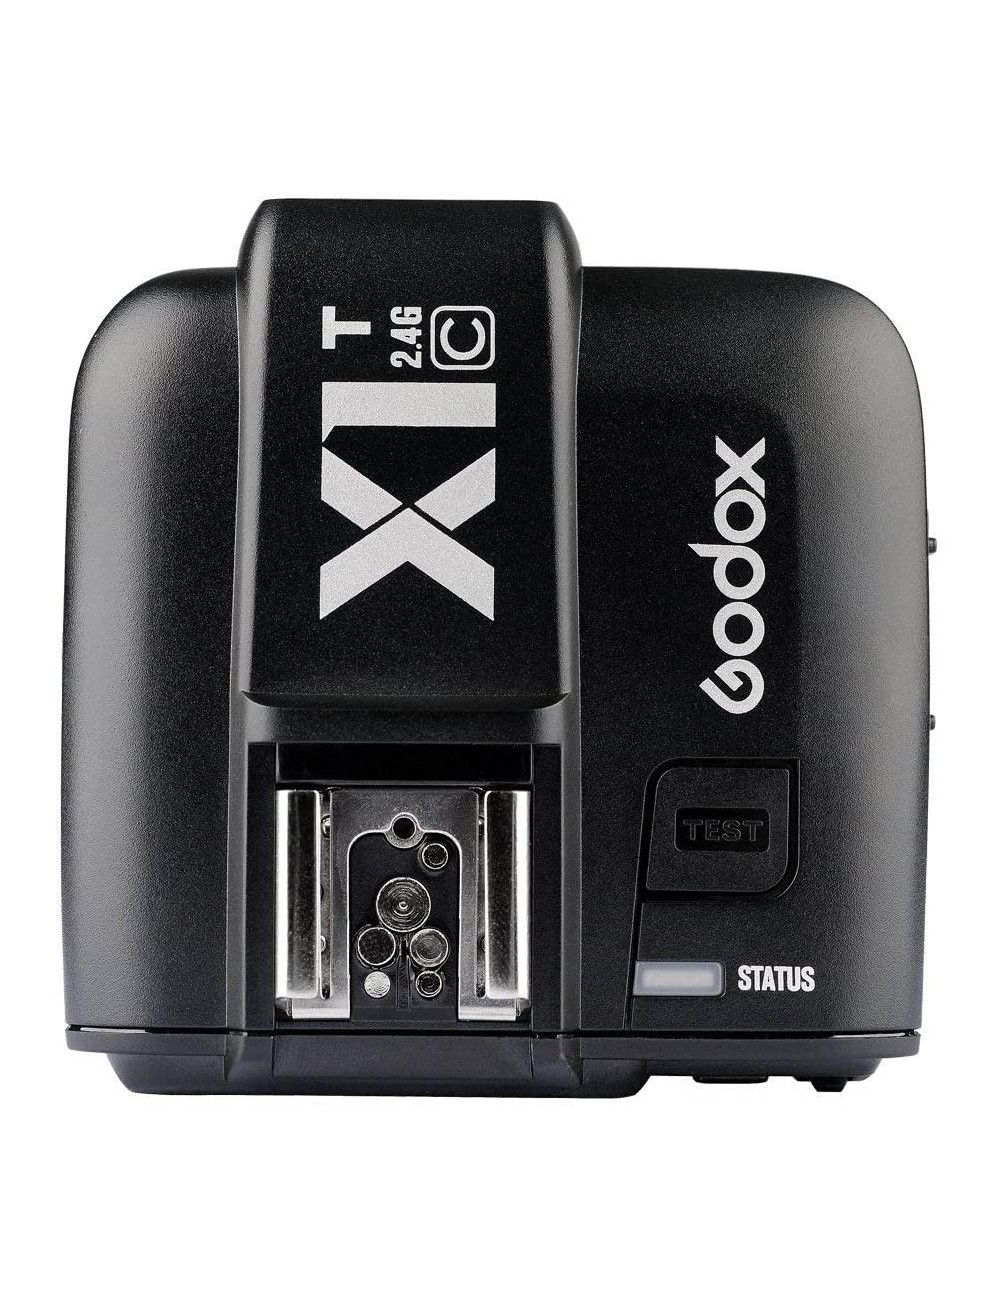 GODOX X1T-C Radio Trasmettitore per Canon